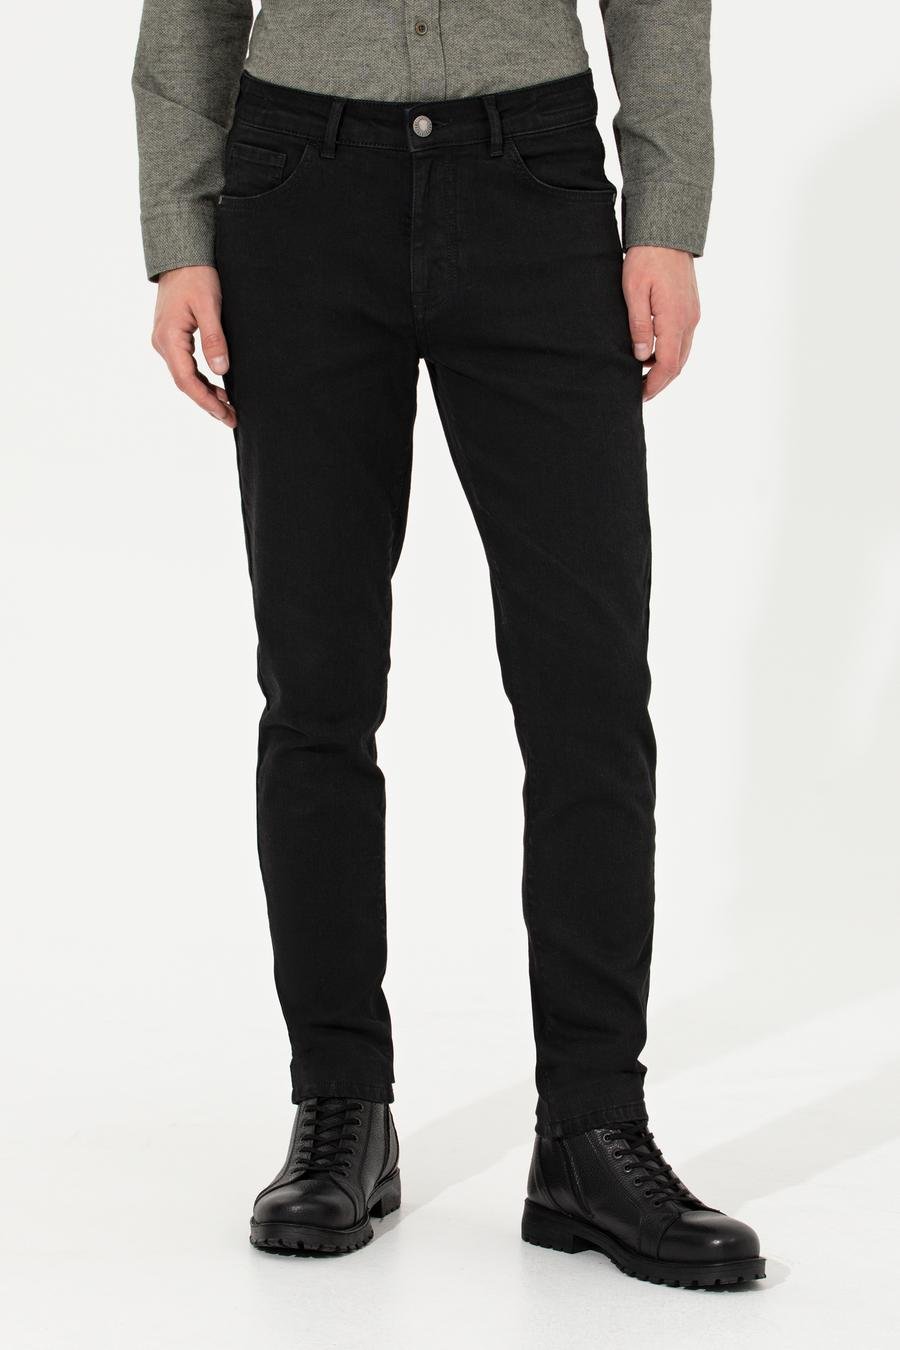 شلوار جین  سیاه  اندامی  مردانه  پیرکاردین